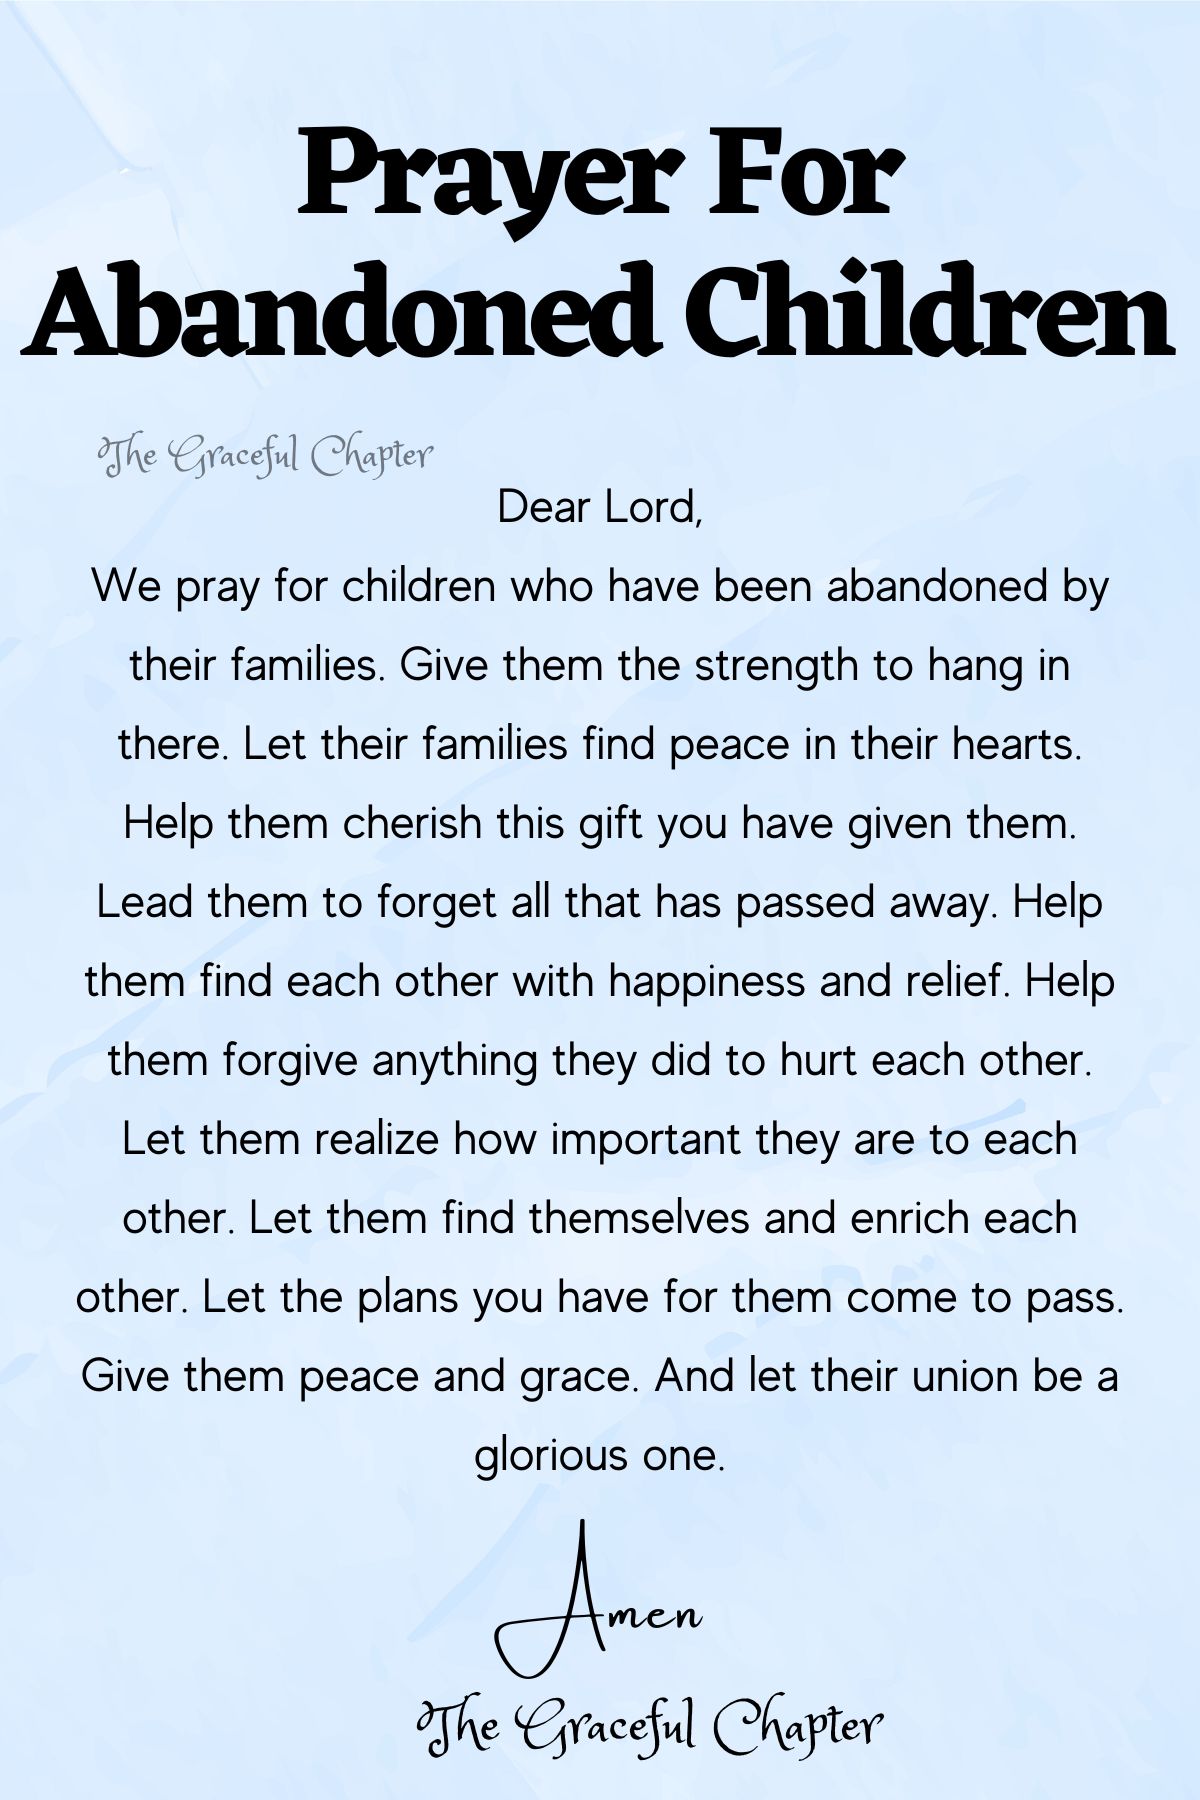 Prayer for abandoned children